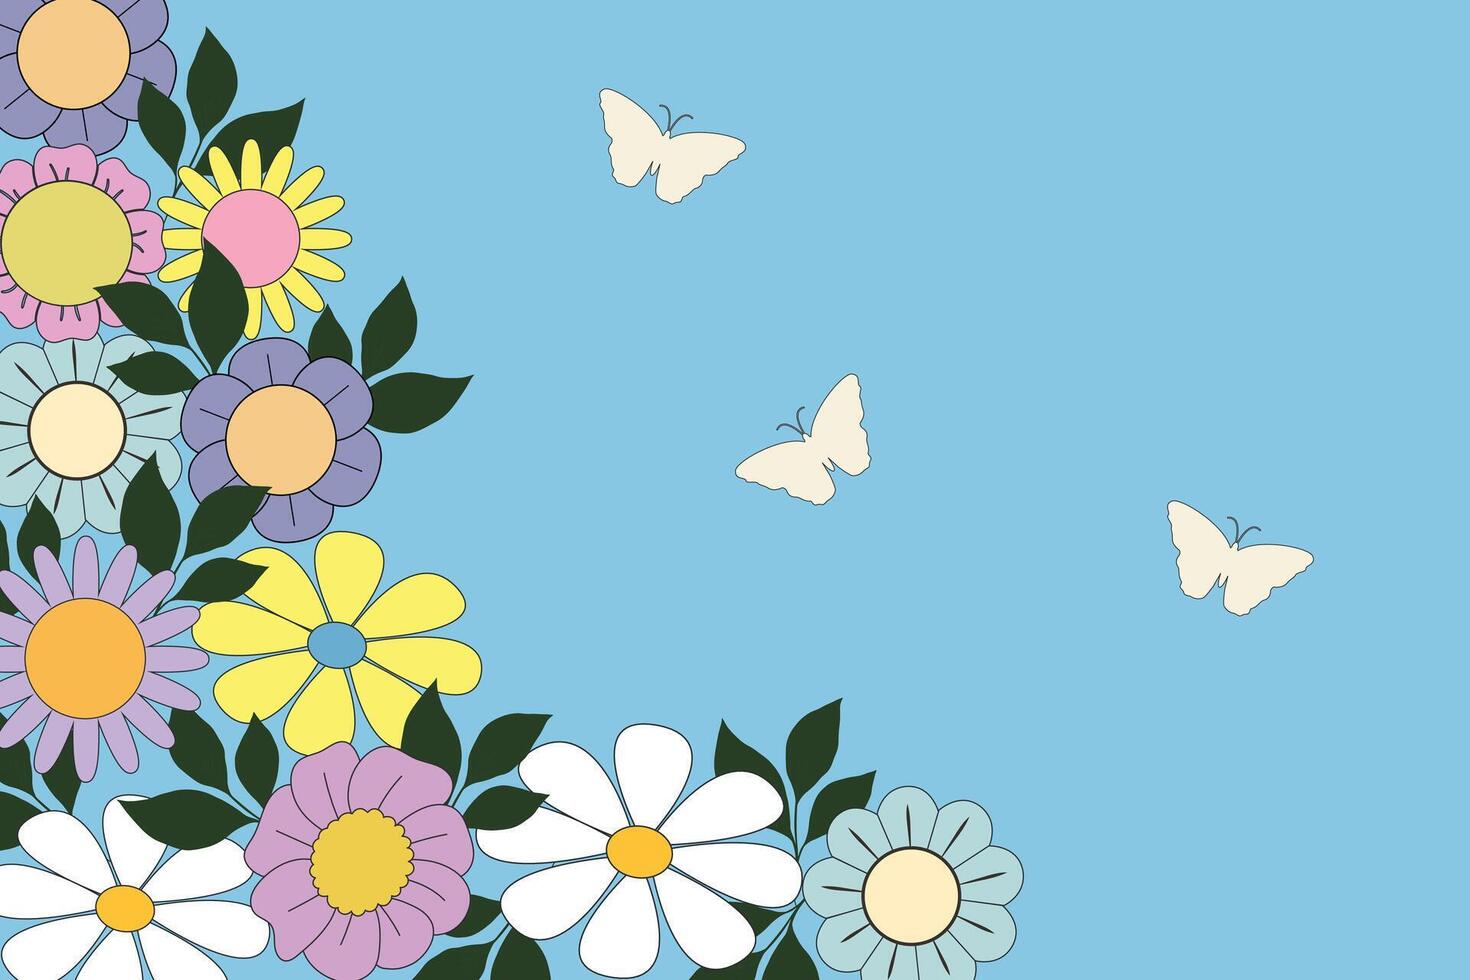 retro banier kader achtergrond .kleurrijk poster achtergrond vector illustratie met zomer bloemen en vlinder. Sjablonen voor viering, advertenties, branding, banier, omslag, label, poster, verkoop